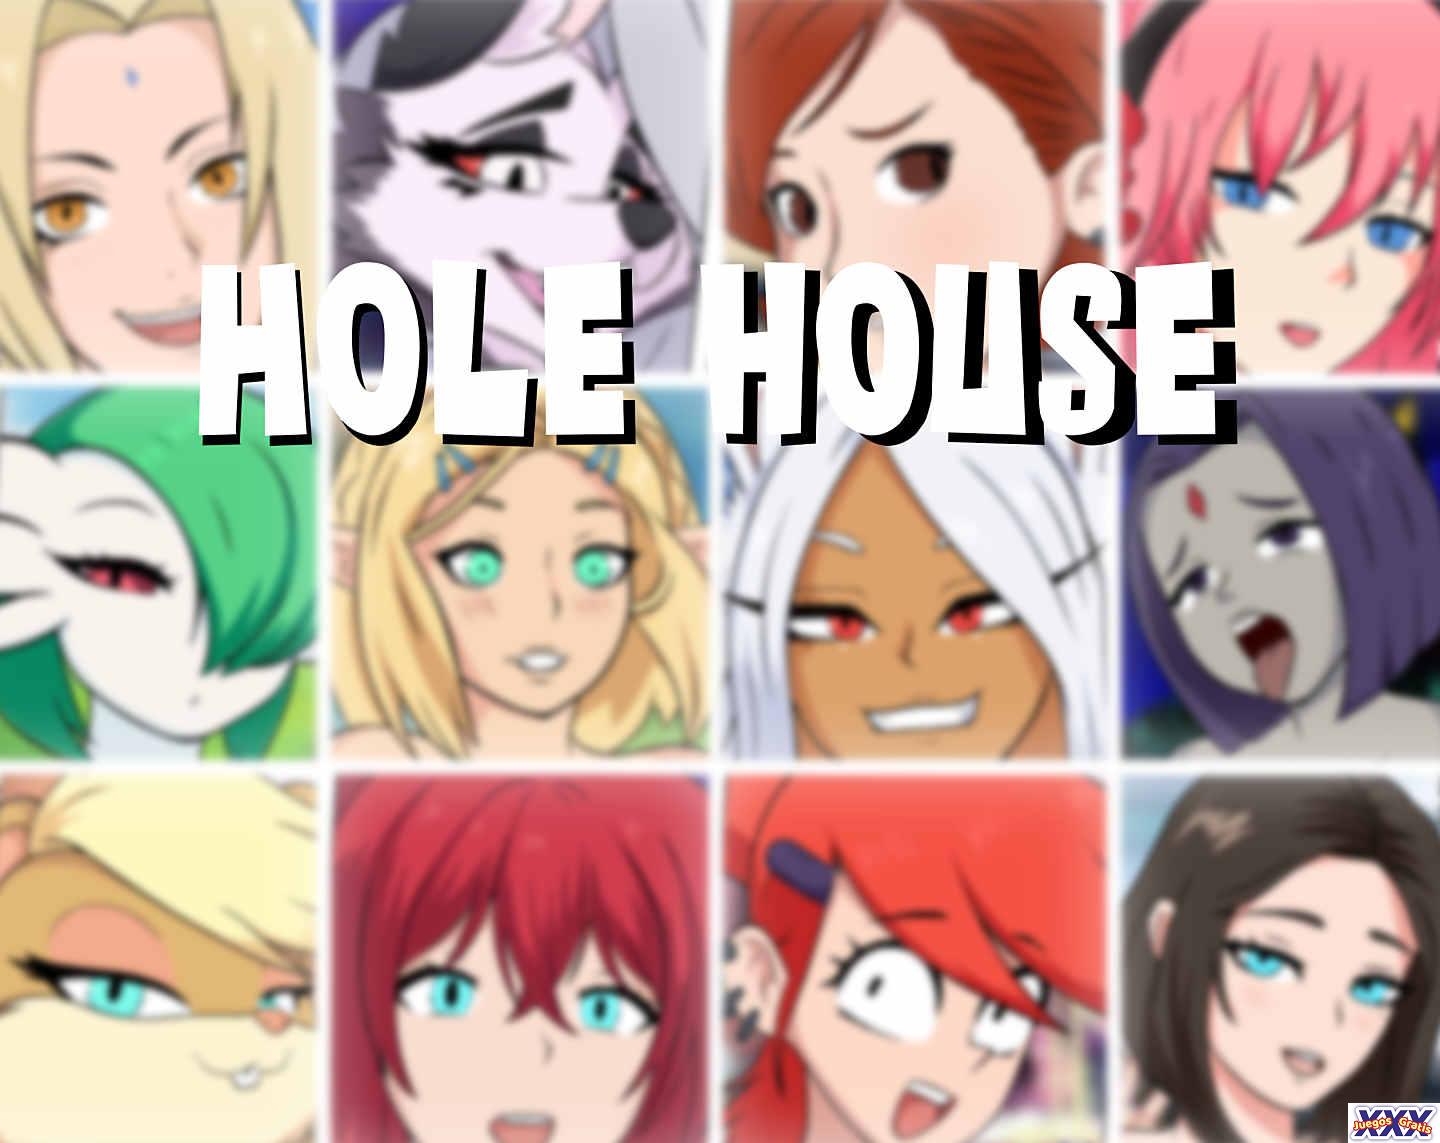 HOLE HOUSE [V0.1.62] [DOTART]